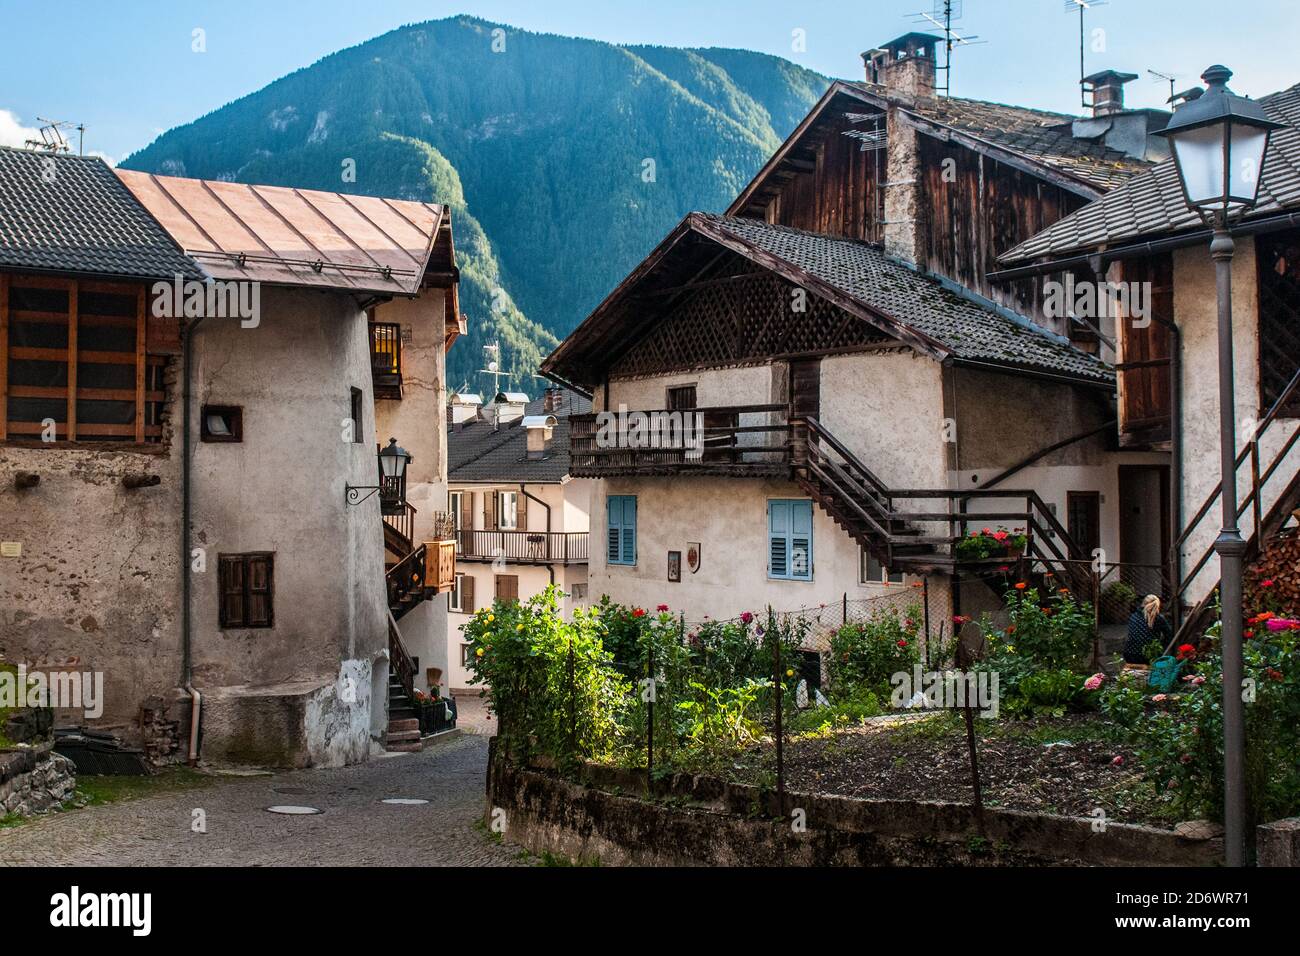 MEZZANO, TRENTINO-ALTO ADIGE - 13 SETTEMBRE 2017: Un tipico vicolo di ciottoli del villaggio italiano di Mezzano in Trentino Alto Adige con un sacco di gre Foto Stock